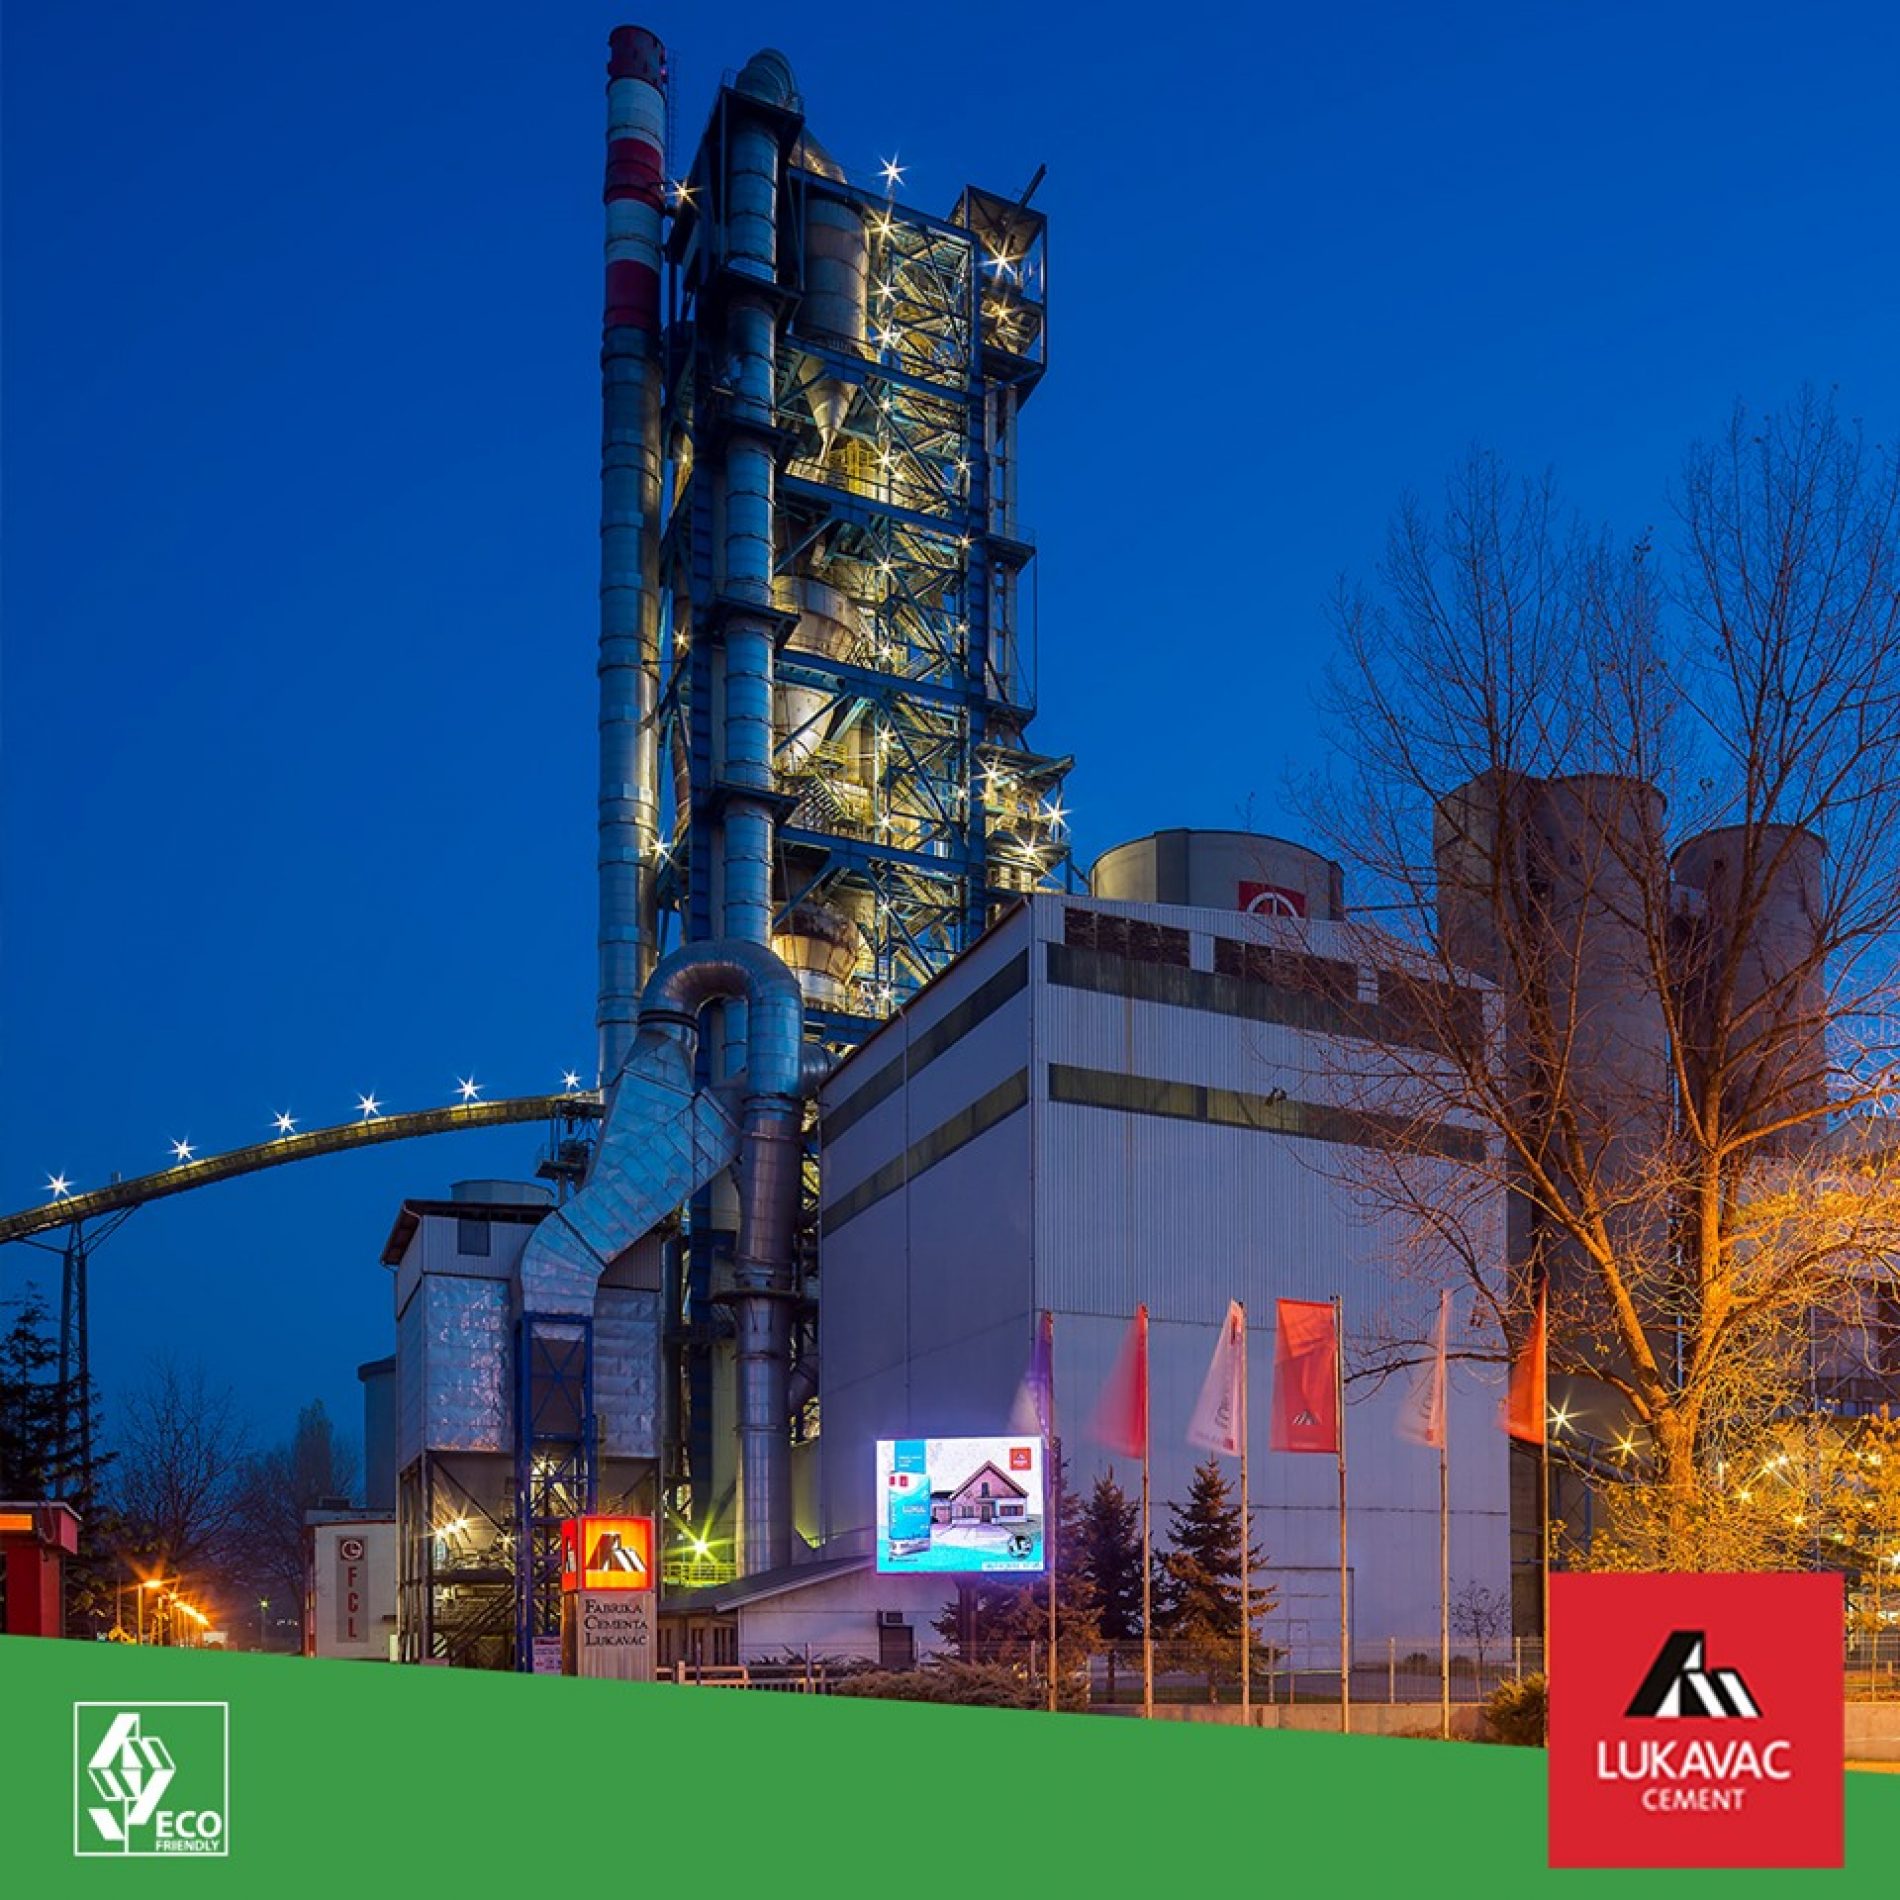 Fabrika cementa Lukavac uložila više od 120 miliona eura u modernizaciju